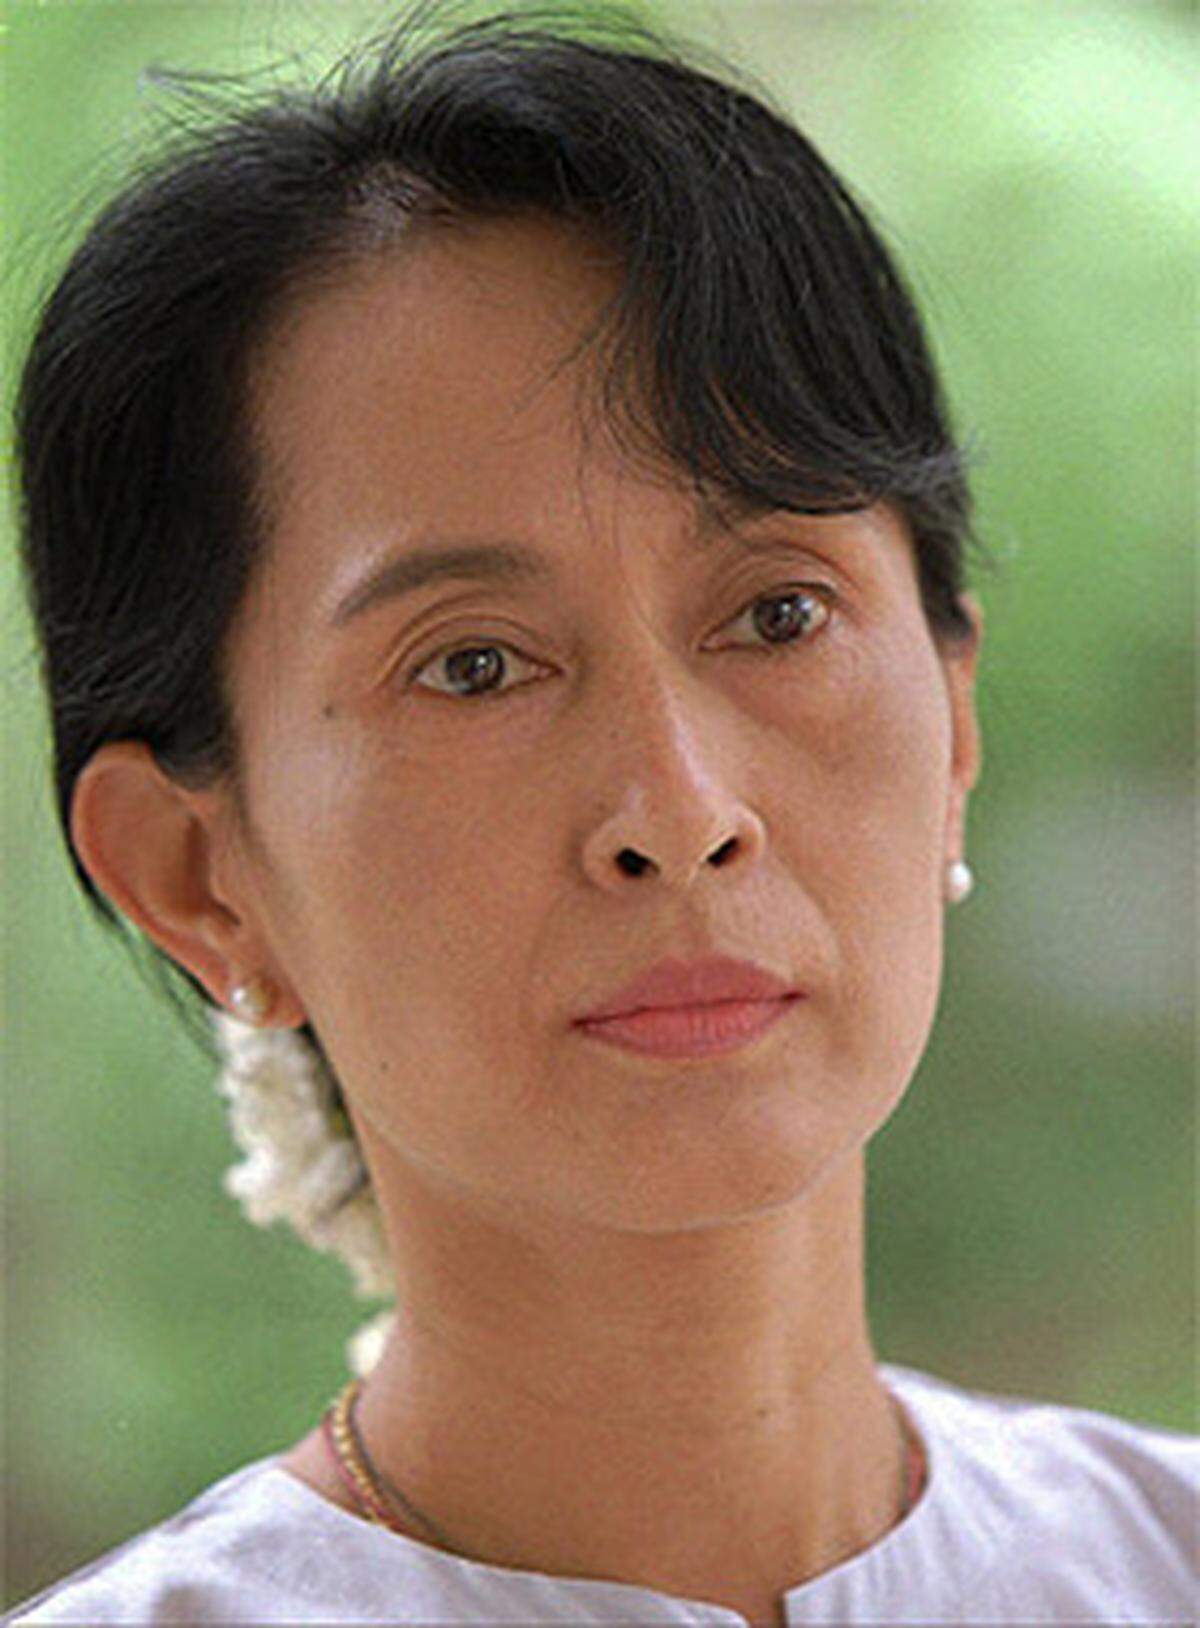 Das Nobel-Komitee zeichnete die burmesische Oppositionspolitikerin Aung San Suu Kyi für ihren gewaltfreien Kampf um Demokratie aus. Der Preis wurde von ihren Söhne in ihrem Namen angenommen, da Aung San Suu Kyi befürchtete, dass ihr die Wiedereinreise nach Myanmar verweigert würde, falls sie selbst zur Preisverleihung reiste.